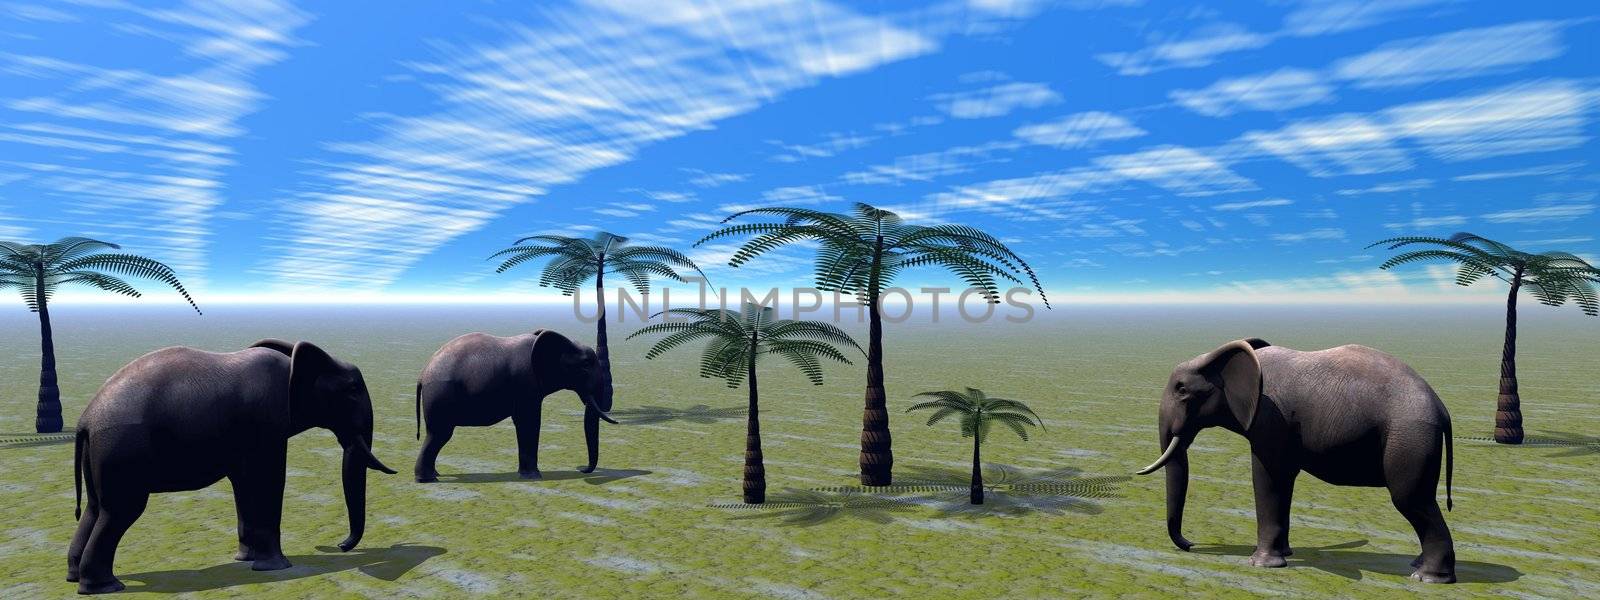 elephants and palms and sky blue